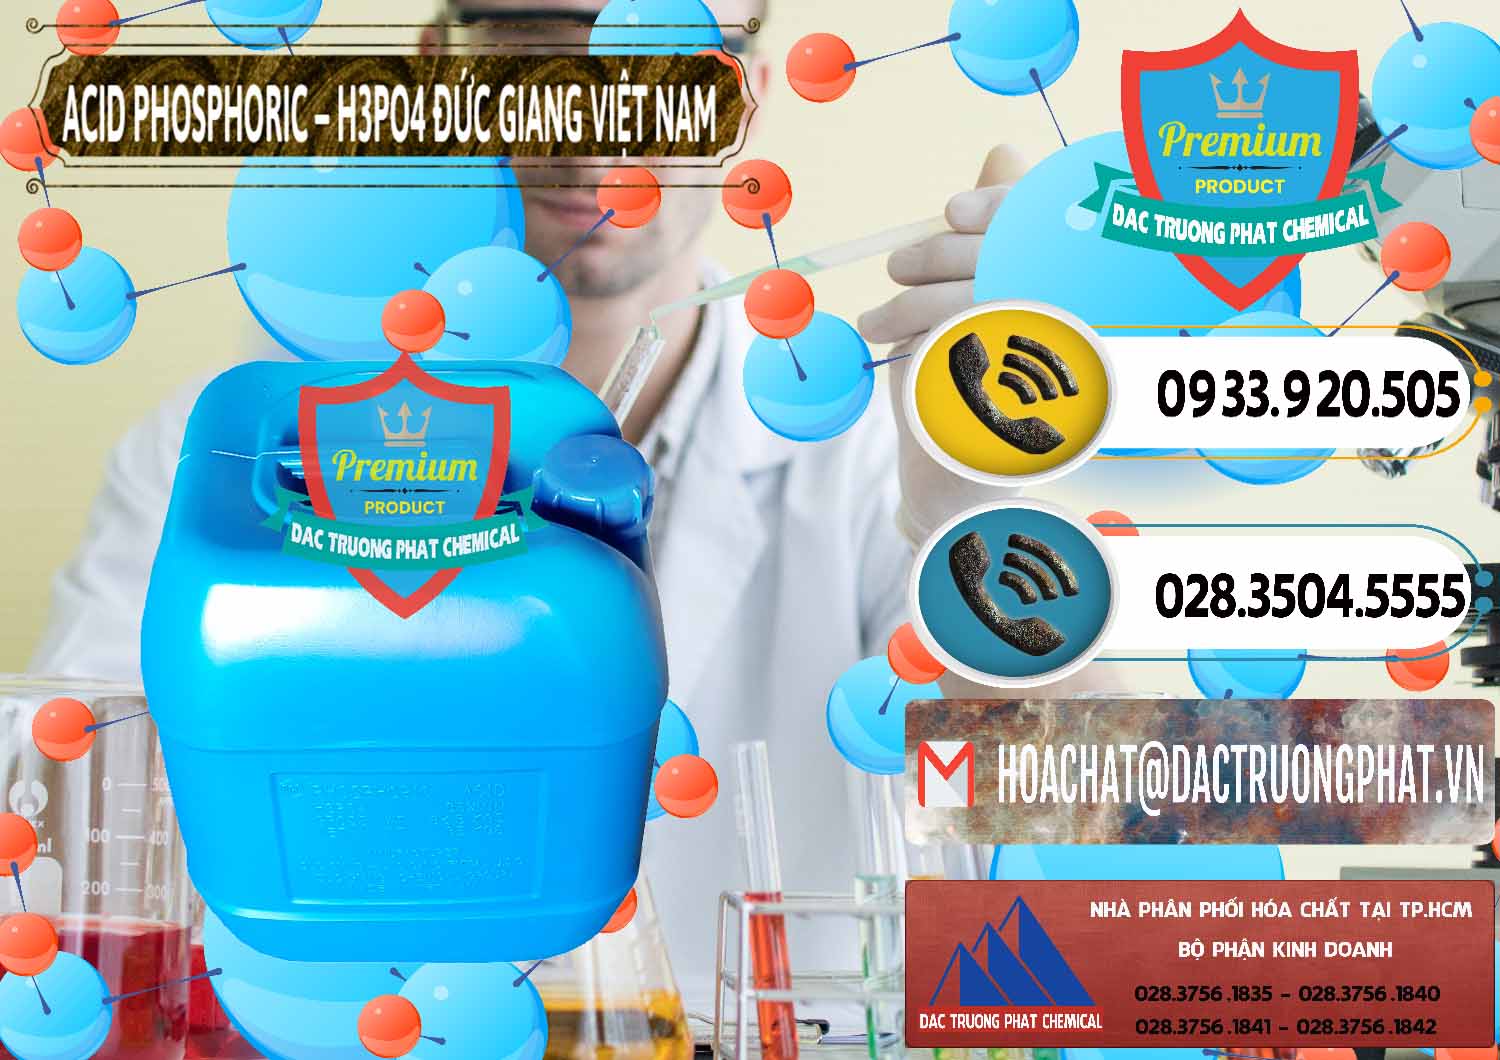 Cty chuyên bán và cung cấp Axit Phosphoric - Acid Phosphoric H3PO4 85% Đức Giang Việt Nam - 0184 - Công ty bán _ cung ứng hóa chất tại TP.HCM - hoachatdetnhuom.vn